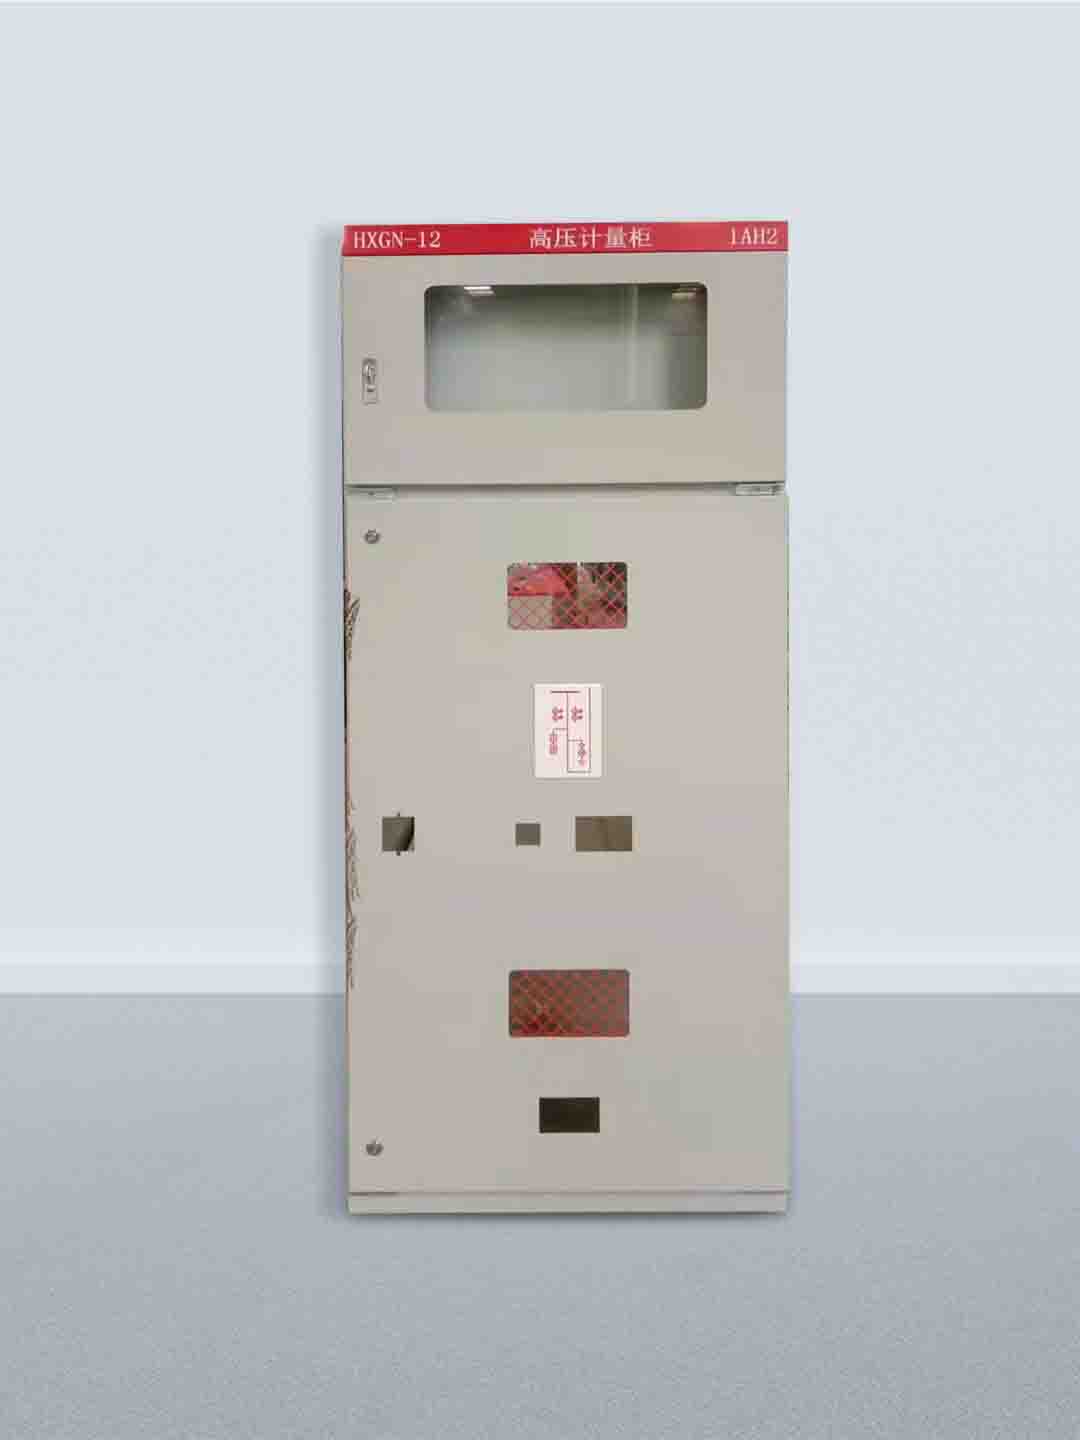 HXGN-12 高压计量柜